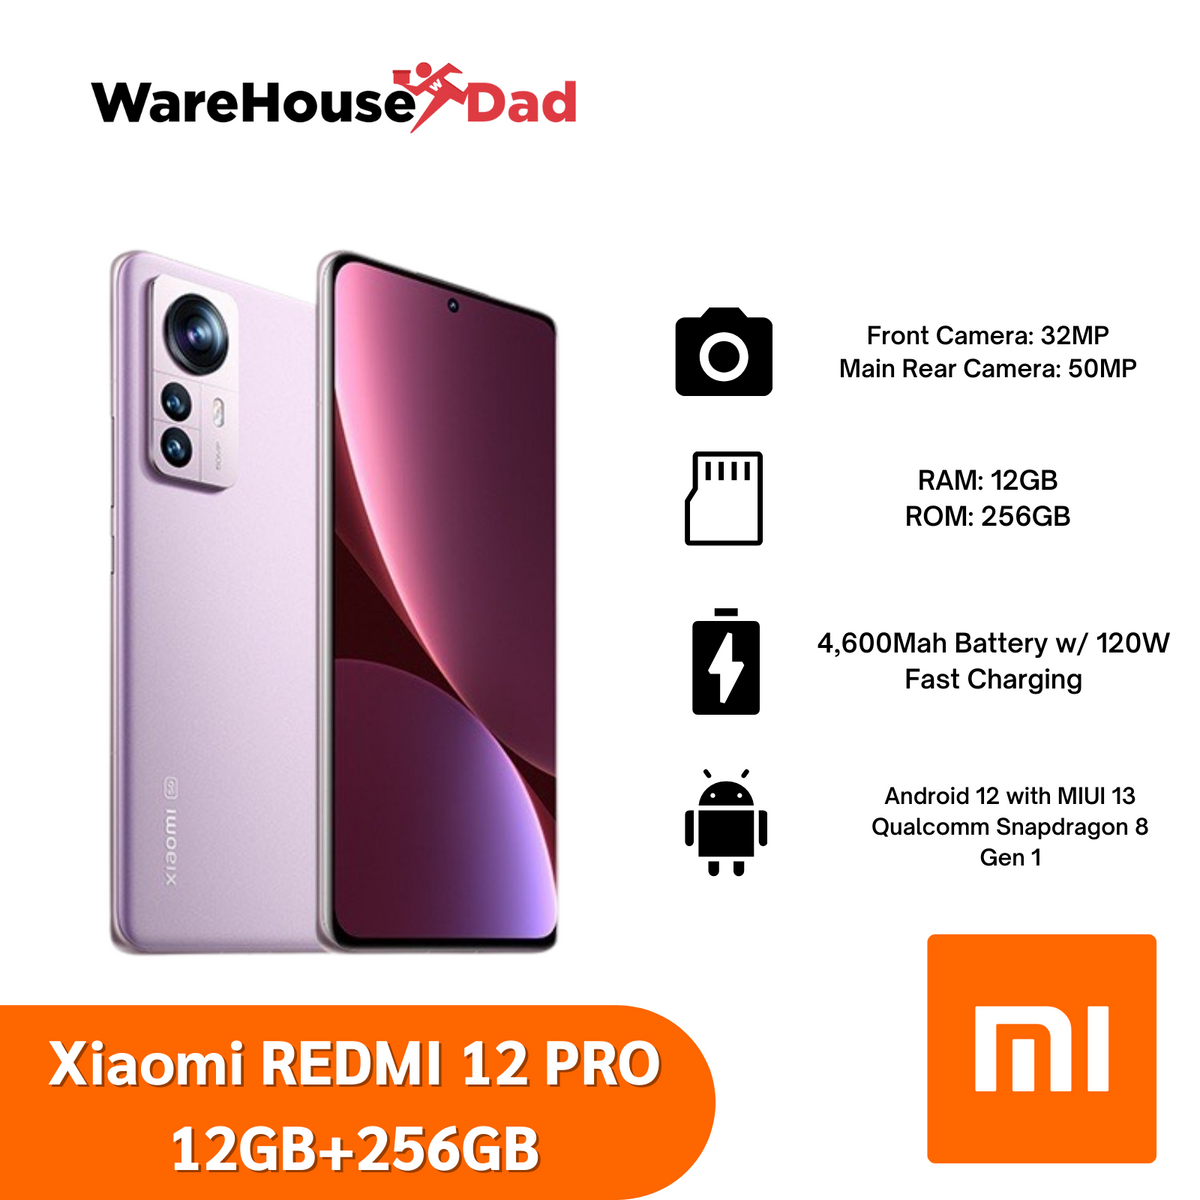 xiaomi-redmi-12-pro-12gb-ram-256gb-rom-smartphone-warehousedad